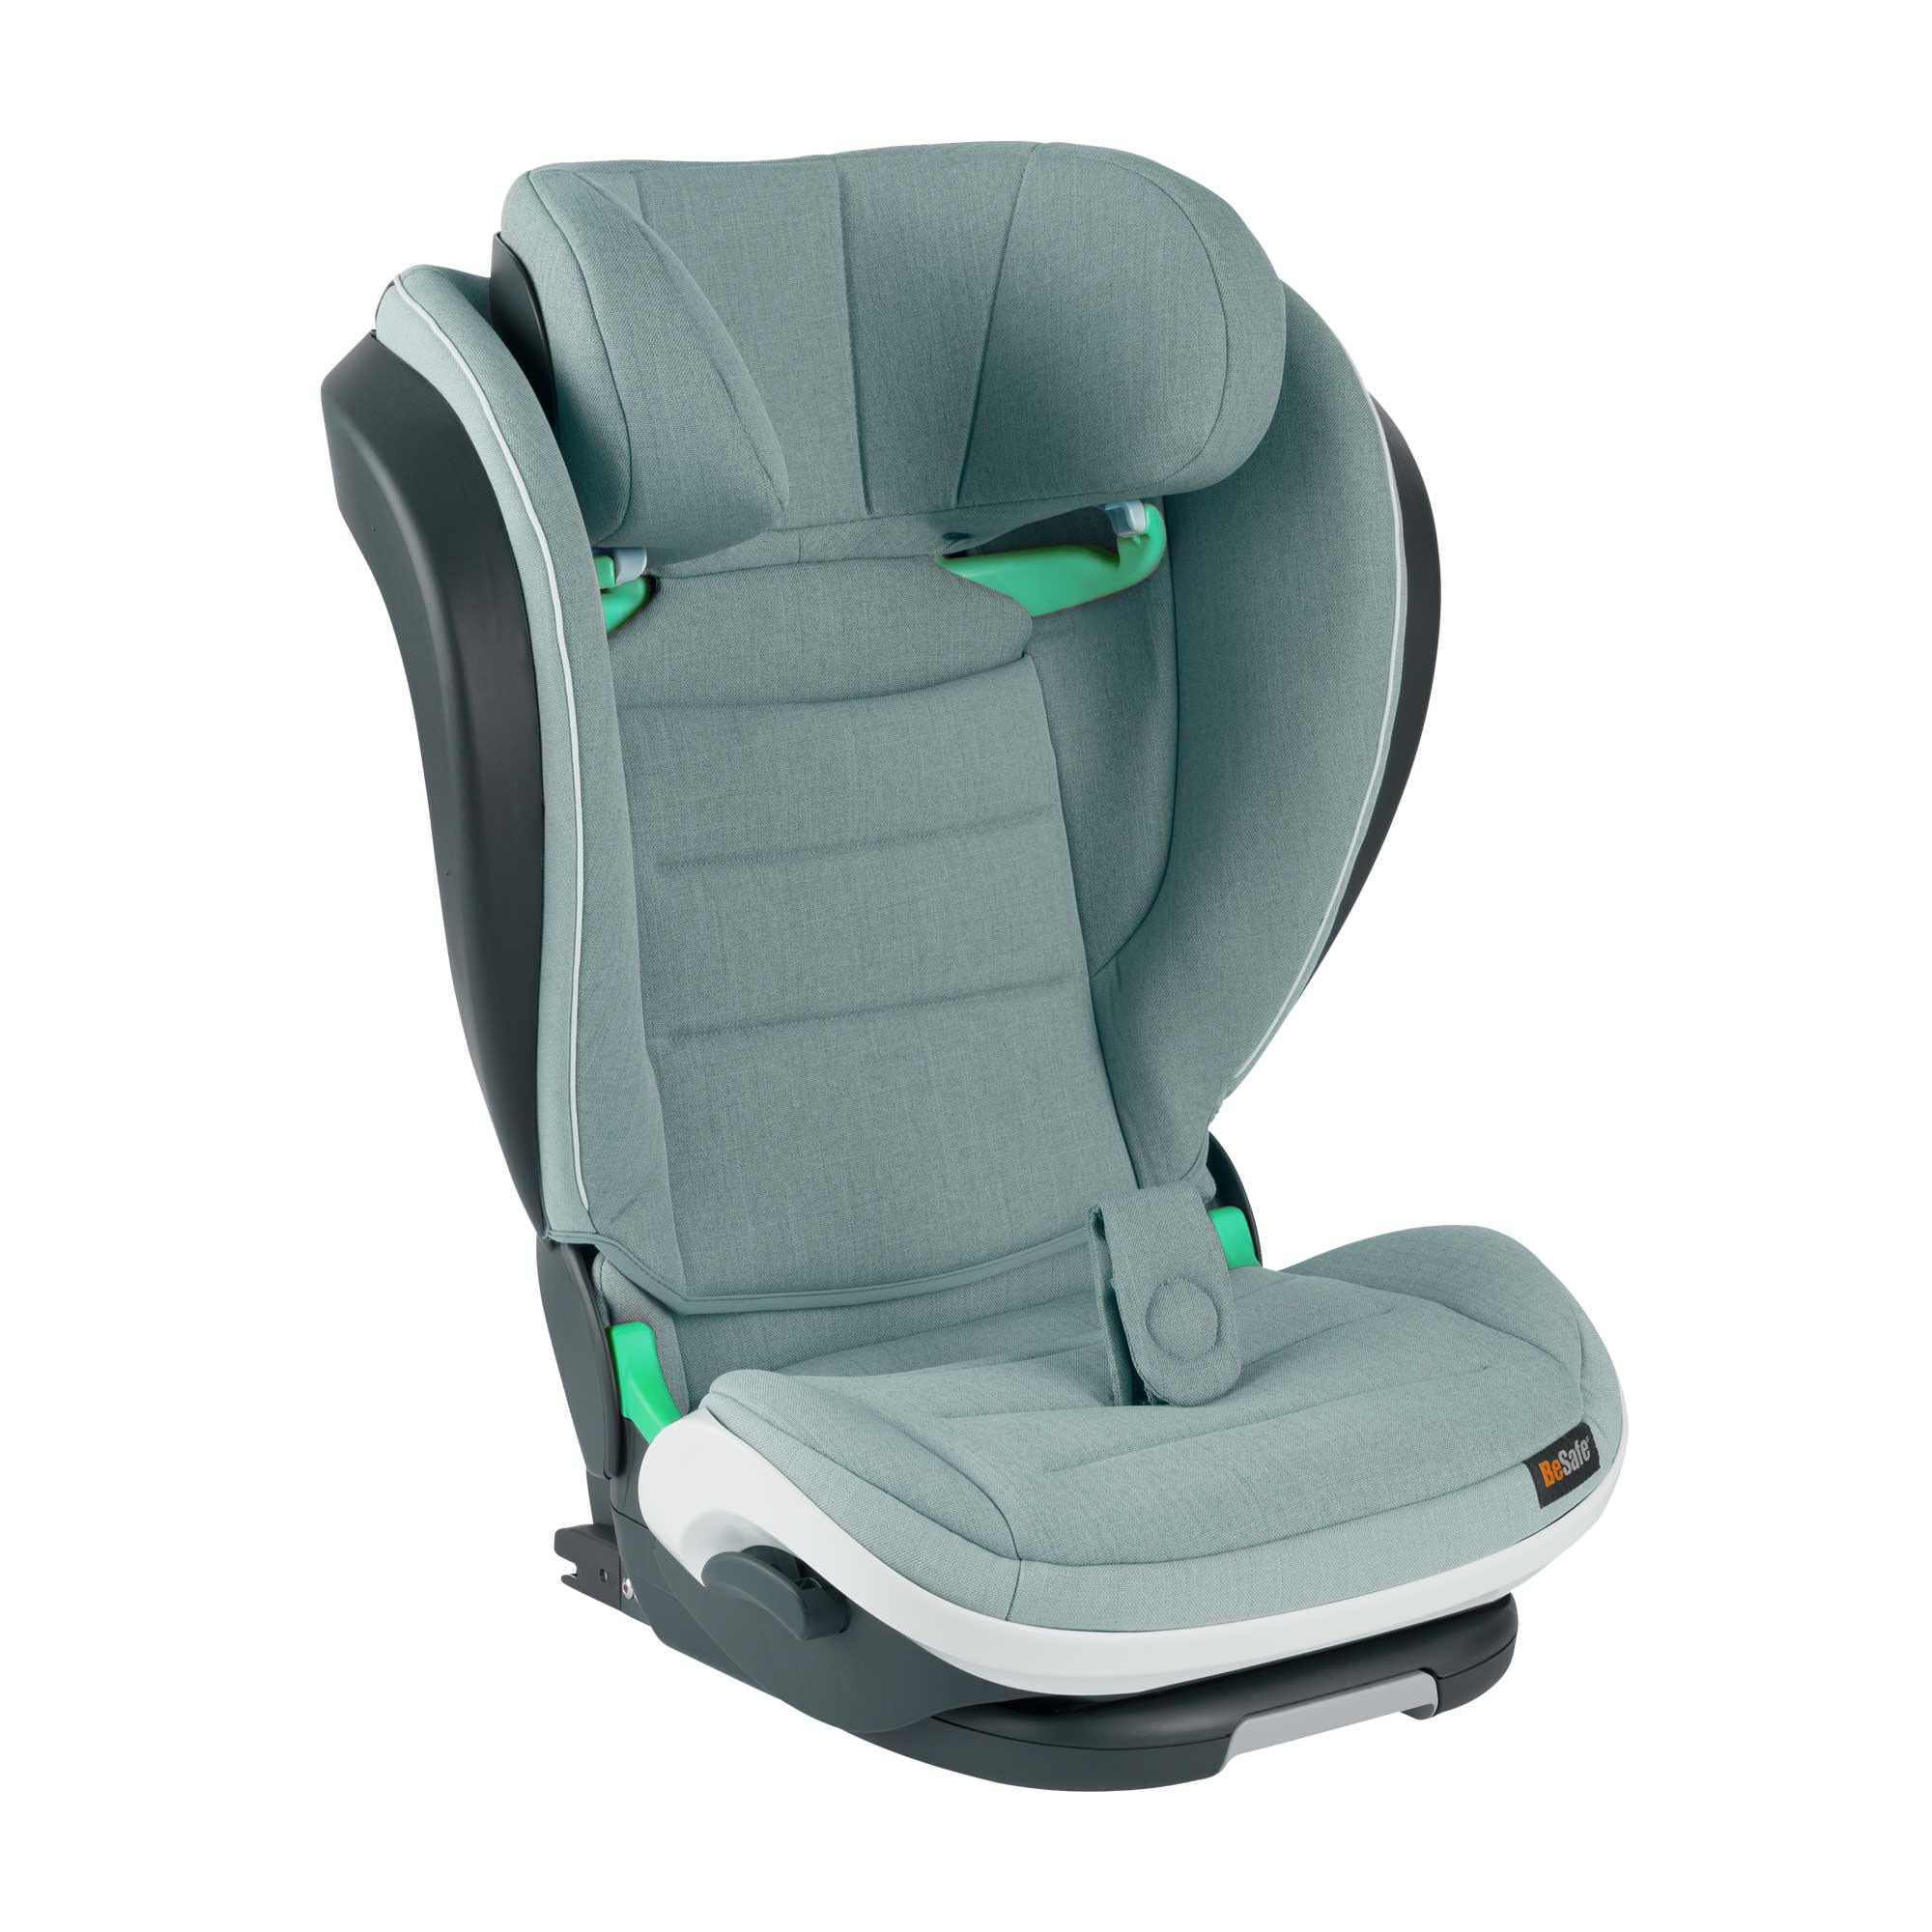 BeSafe Schutzbezug für Fahrzeugsitz - optimaler Schutz für Ihr Auto